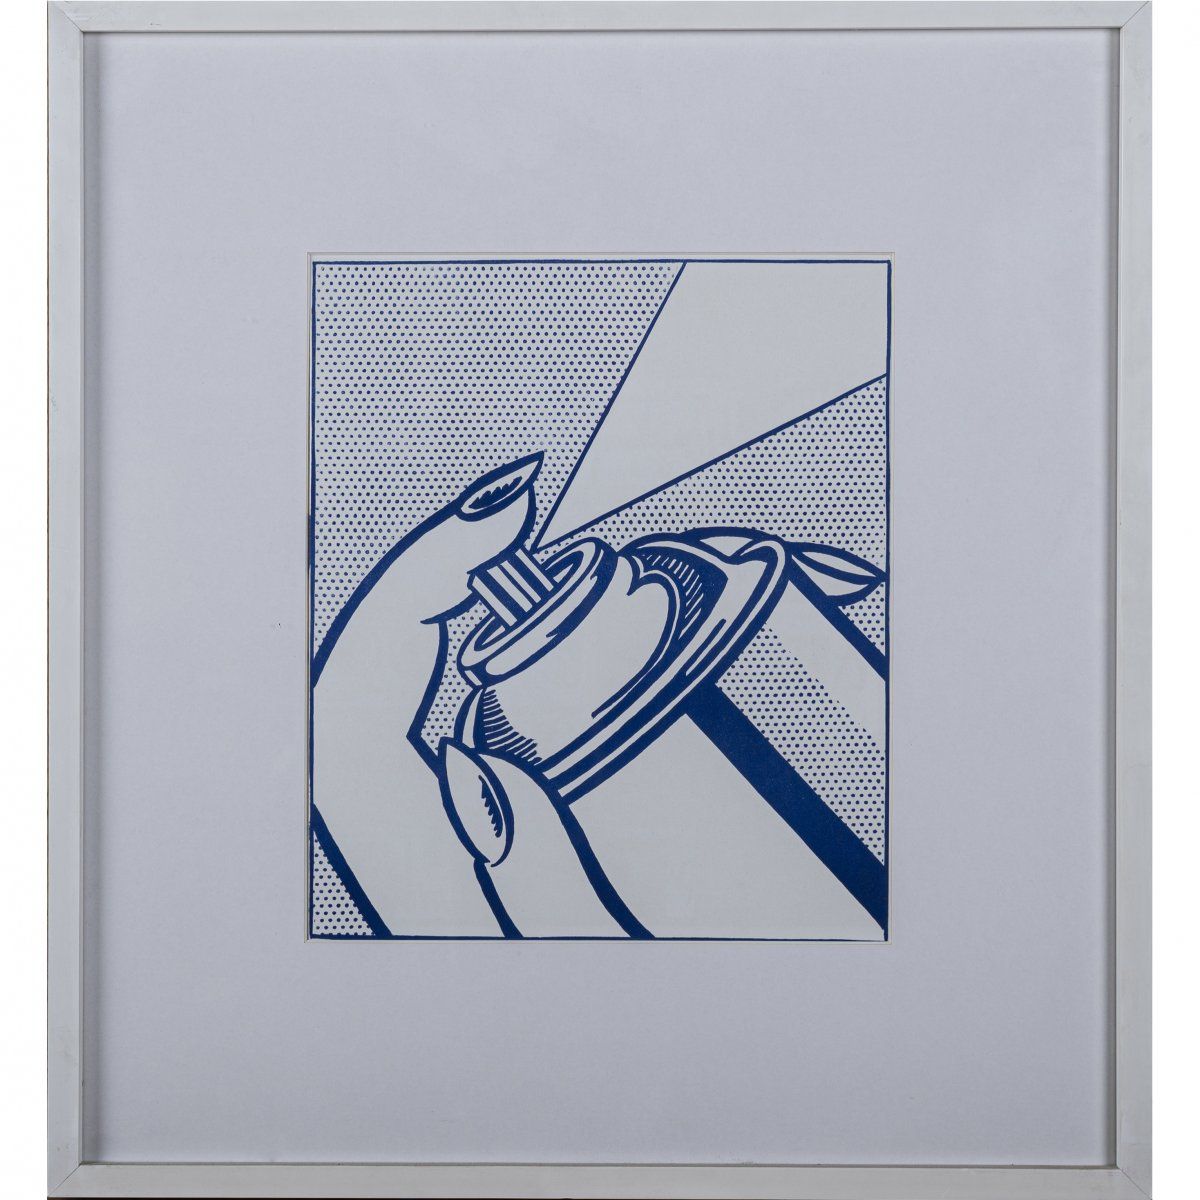 Null Roy Lichtenstein (1923 New York - 1997 ebenda), "Spray Can" aus "One Cent L&hellip;